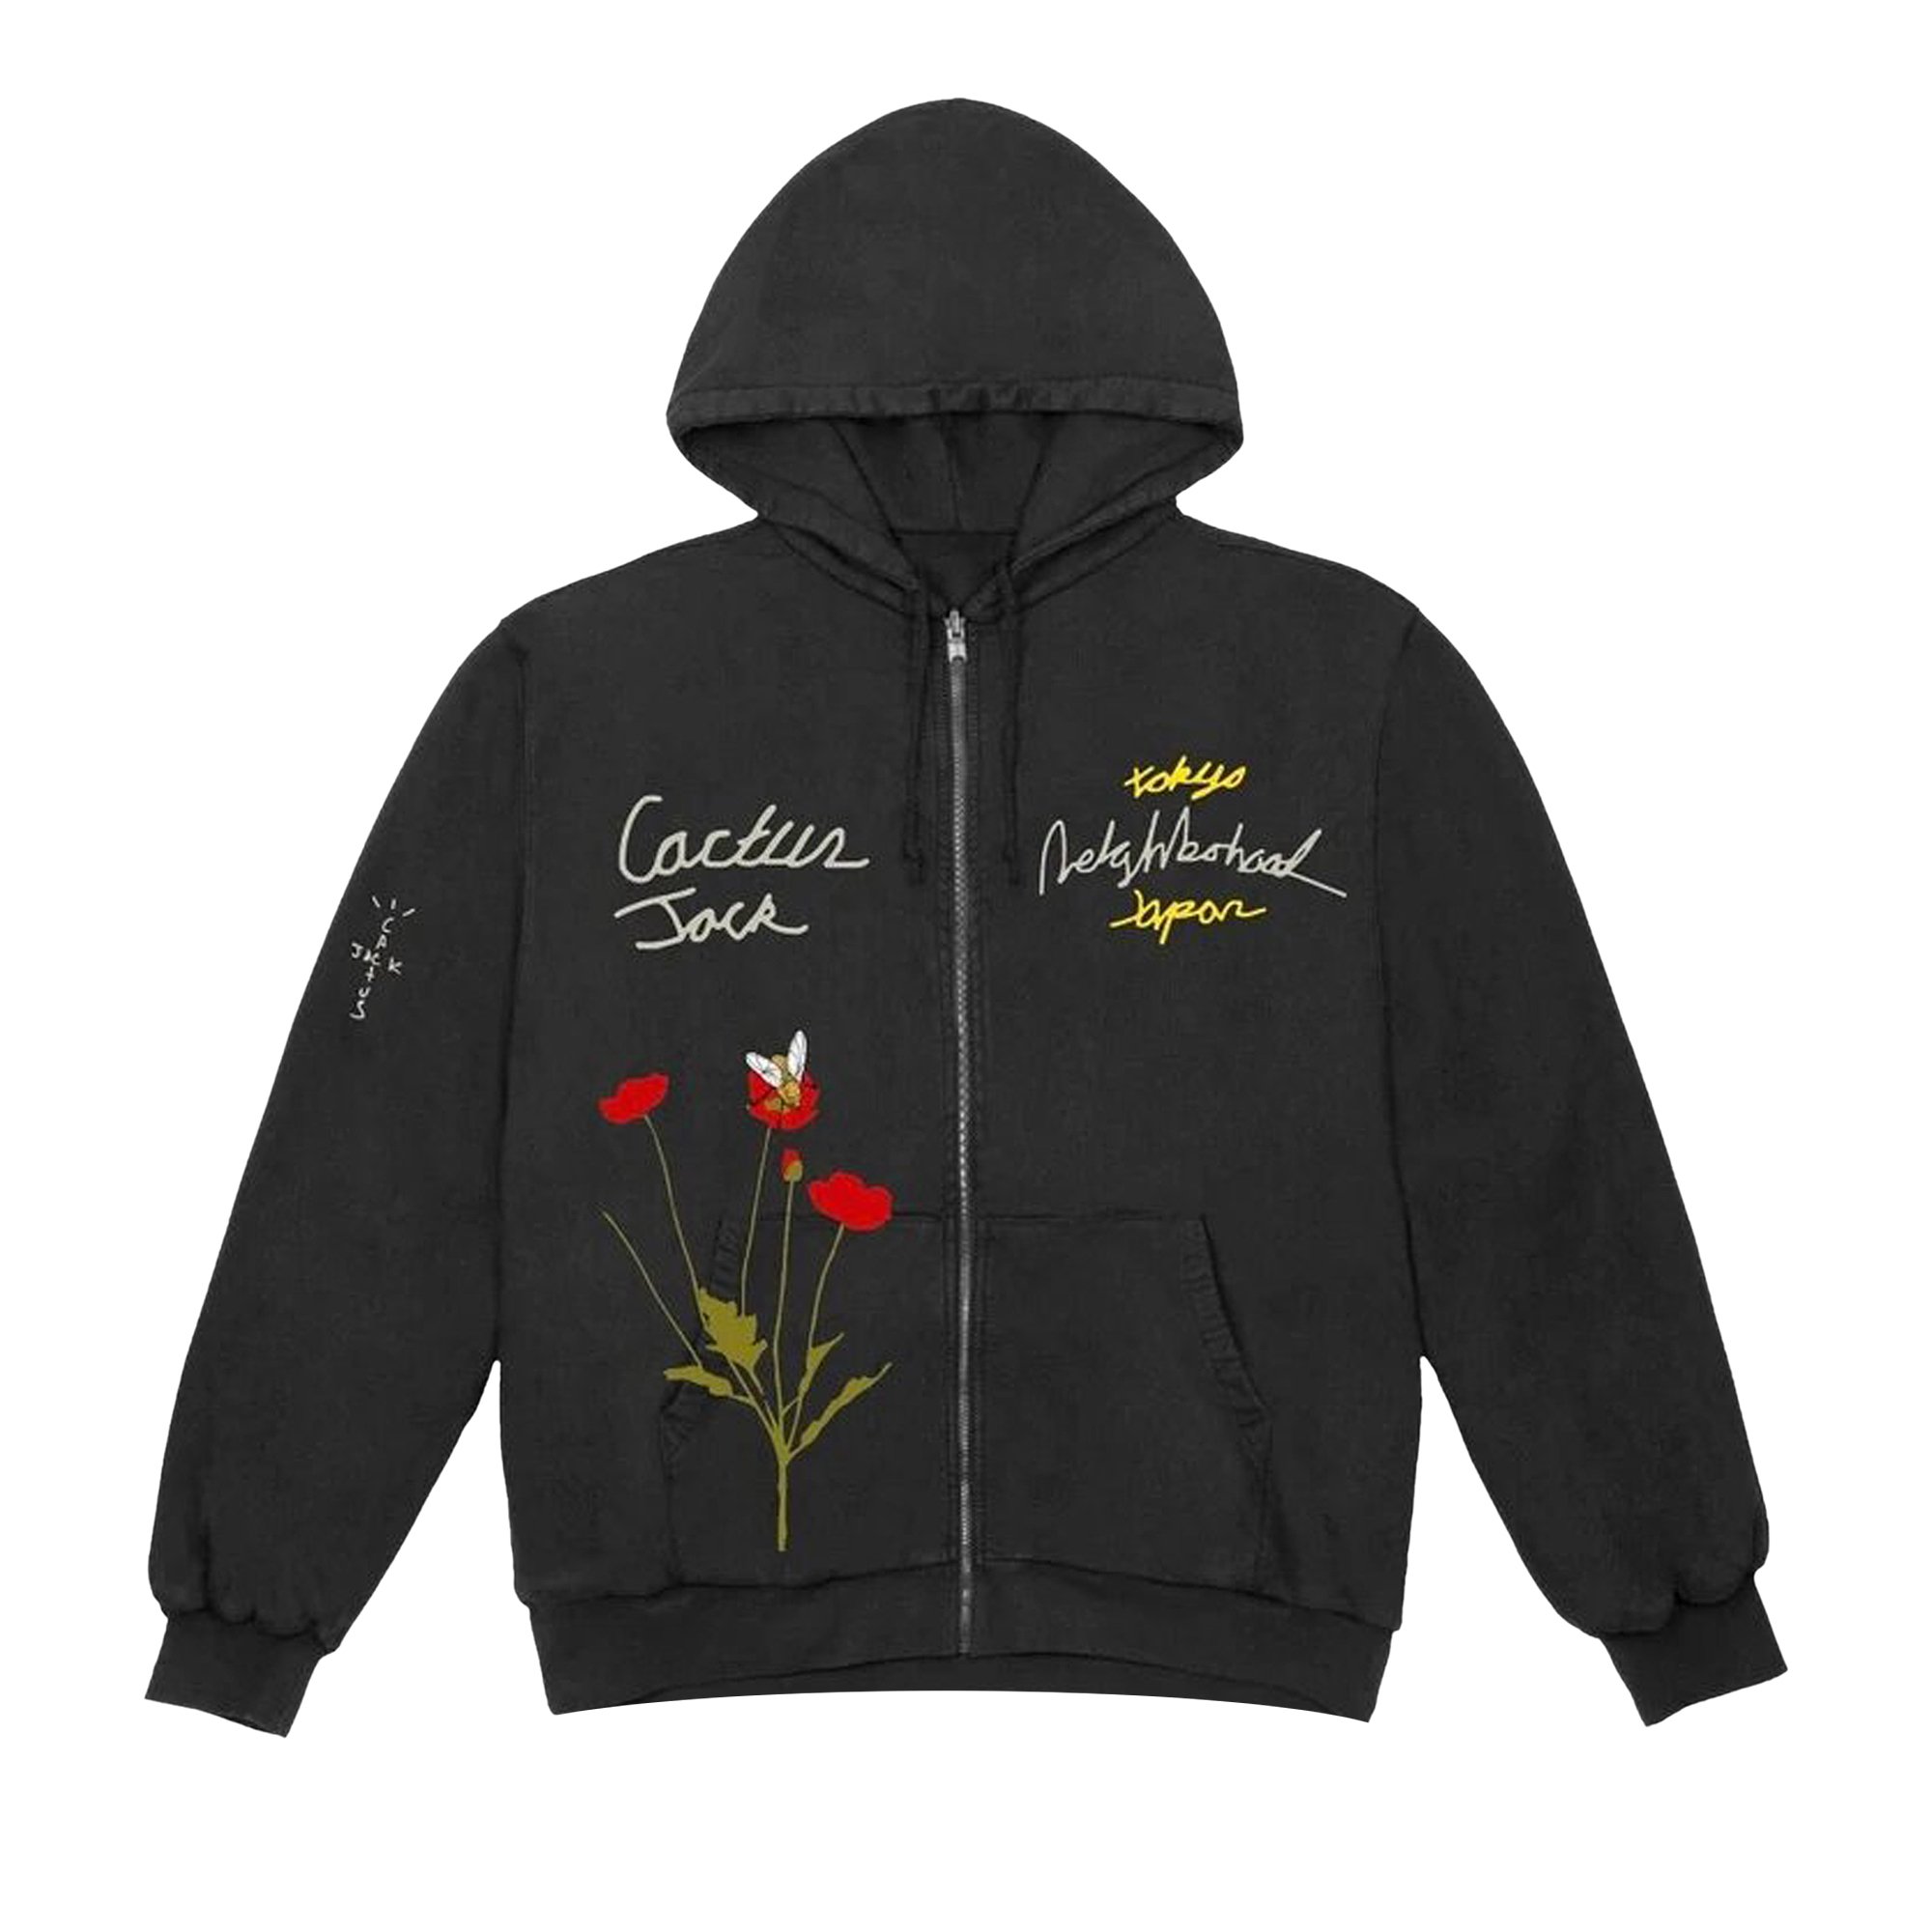 Толстовка Черный Cactus Jack by Travis Scott x Neighborhood Carousel printed hoodie men women casual 2021 newest sweater hooded 3d apparel hoodie printed new jacket